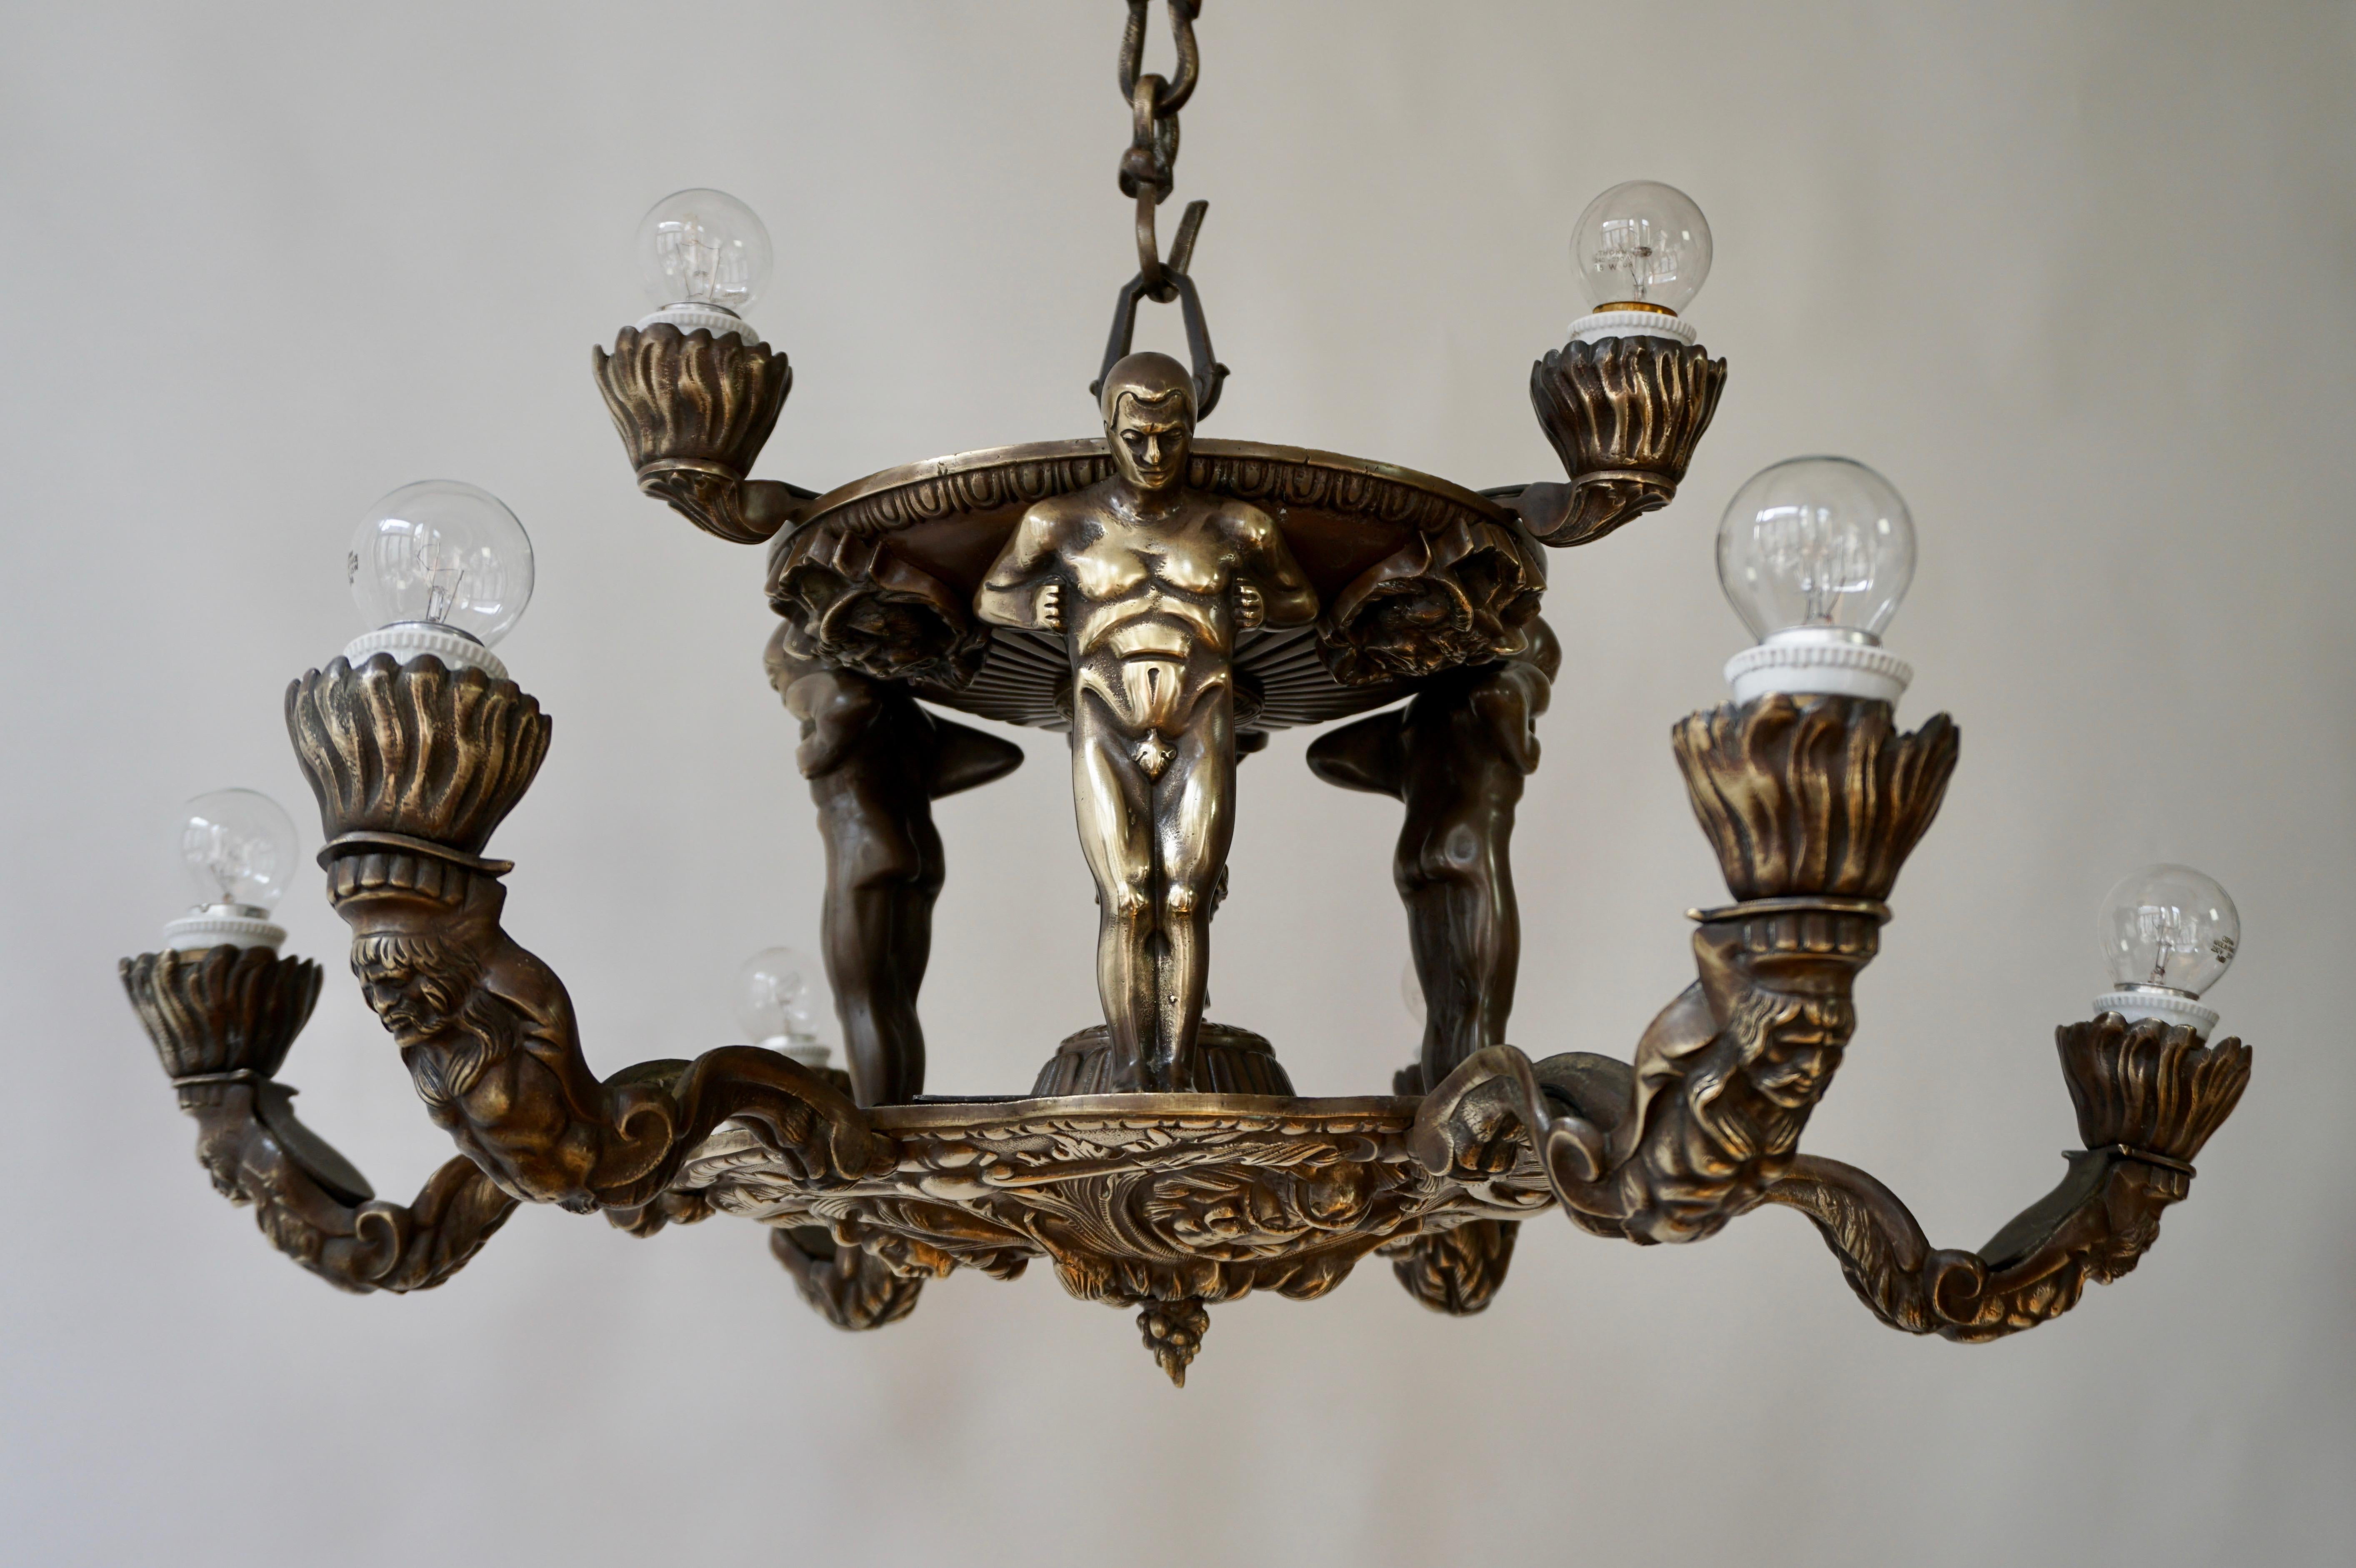 Remarquable lustre en bronze à six lumières de style Hollywood Regency, dont la partie supérieure s'inspire des motifs Art déco de Wiener Werkstätte, représentant trois figures masculines nues soutenant une structure en forme de fontaine. La partie